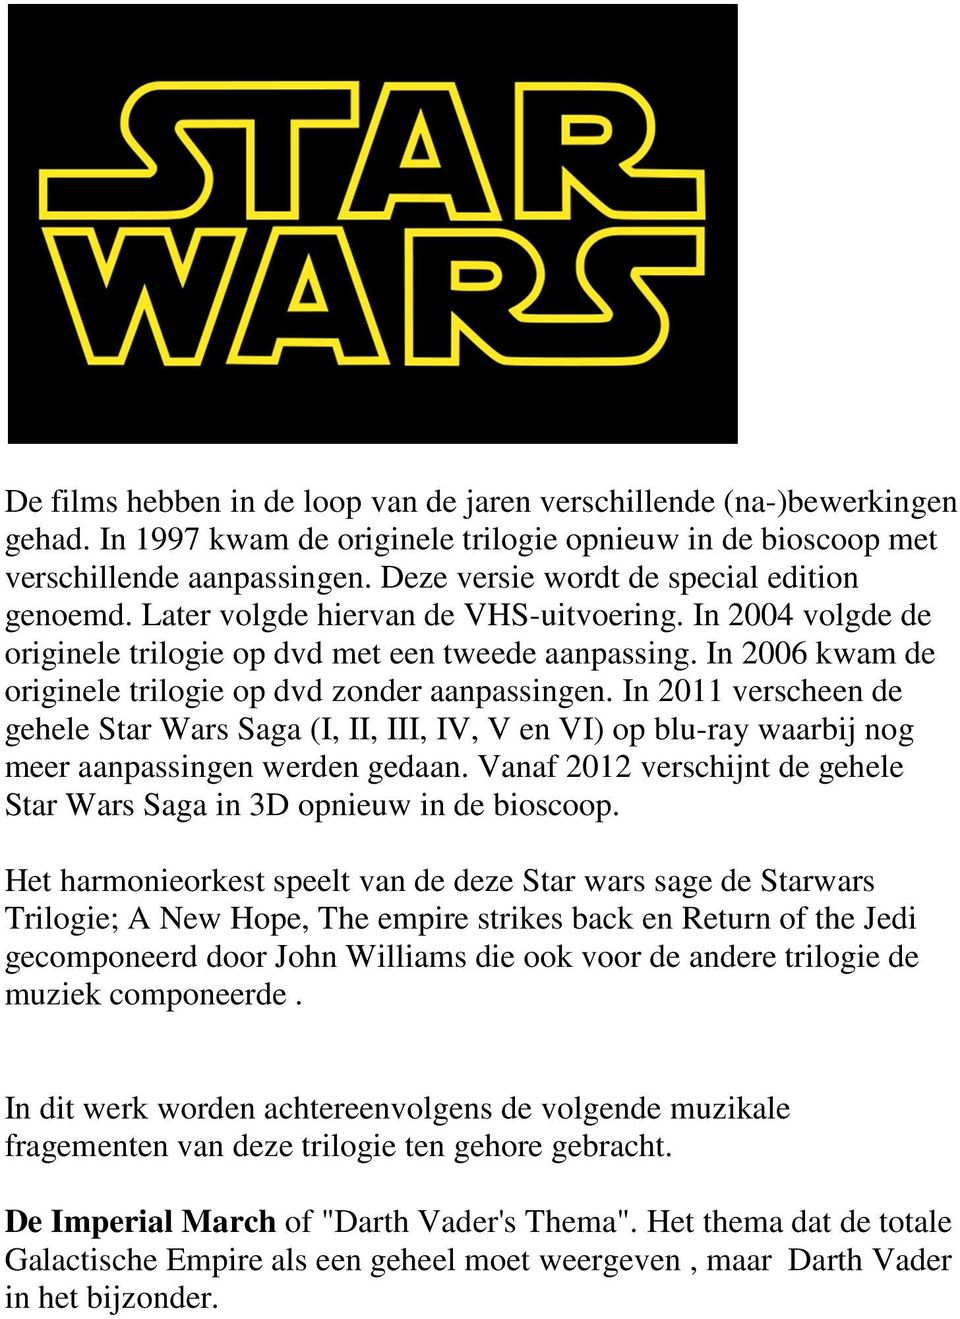 In 2006 kwam de originele trilogie op dvd zonder aanpassingen. In 2011 verscheen de gehele Star Wars Saga (I, II, III, IV, V en VI) op blu-ray waarbij nog meer aanpassingen werden gedaan.